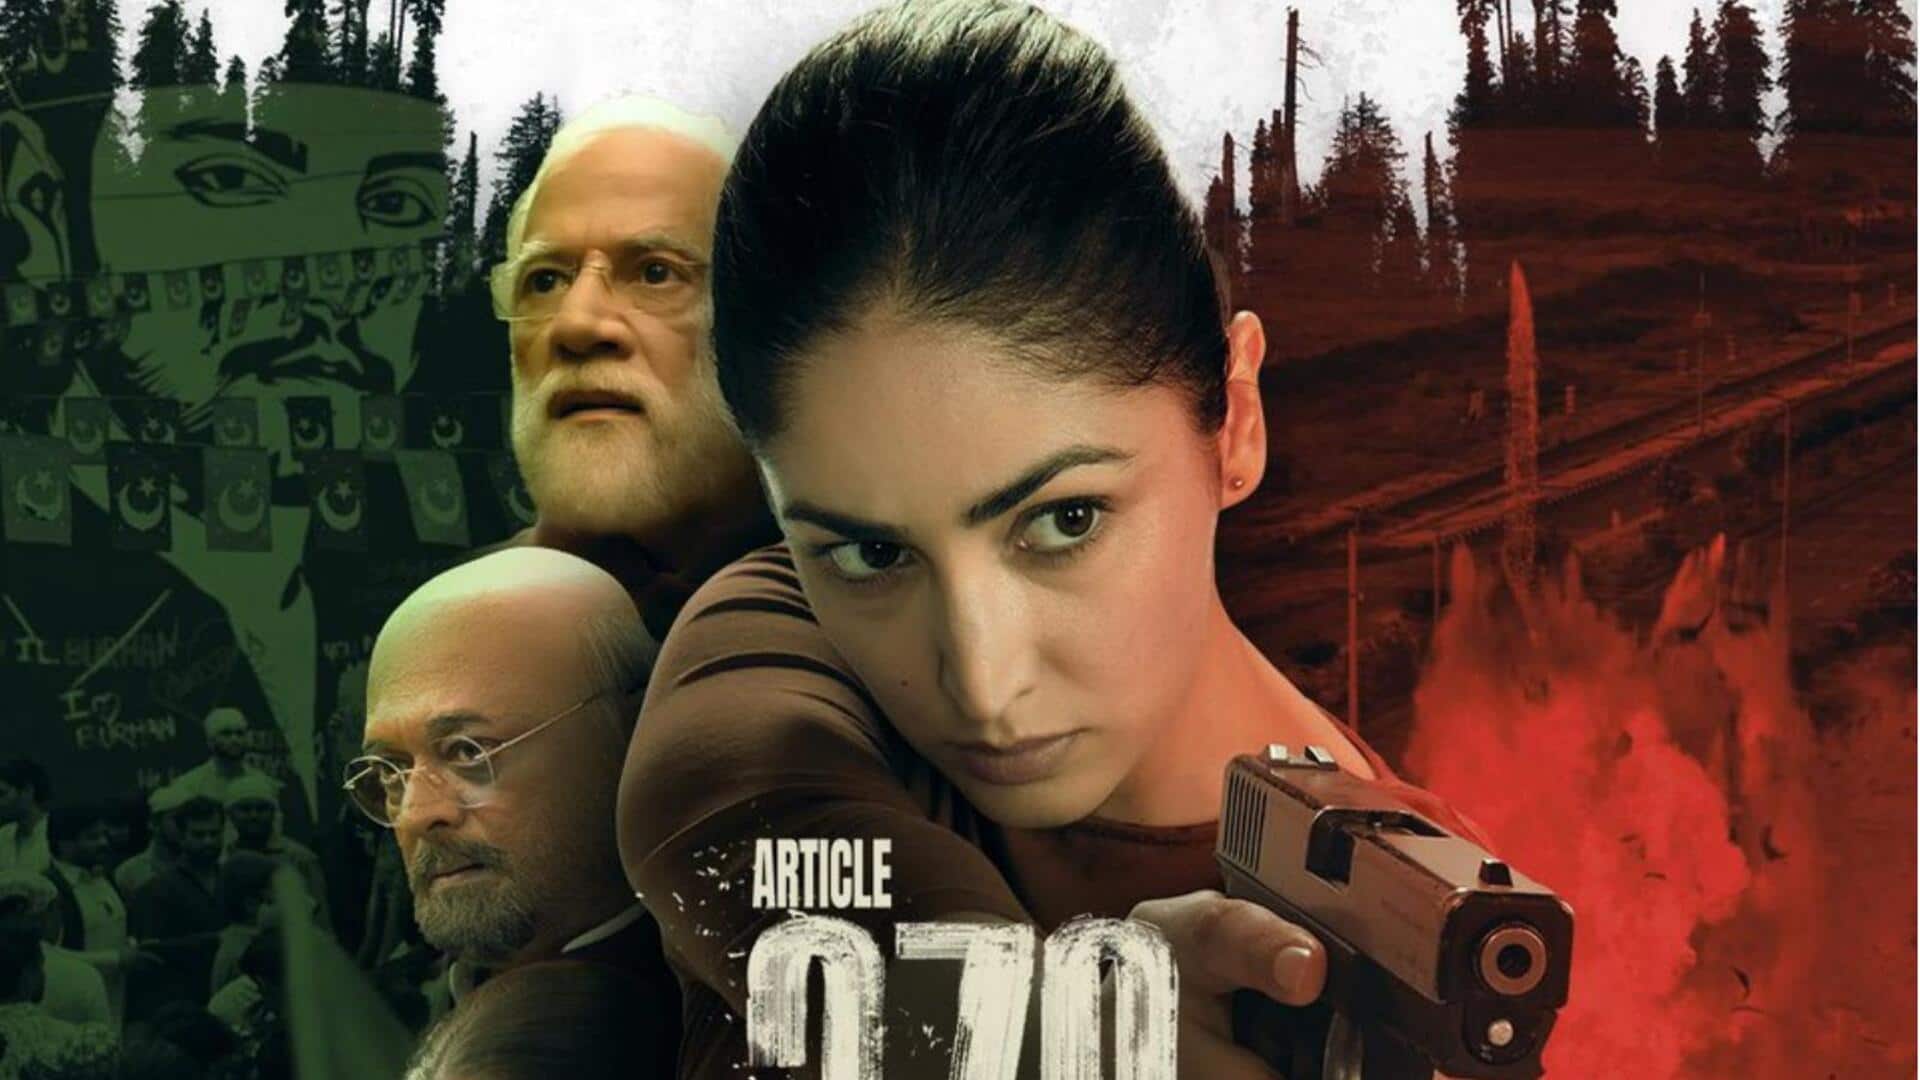 यामी गौतम की फिल्म 'आर्टिकल 370' इस OTT प्लेटफॉर्म पर हुई रिलीज